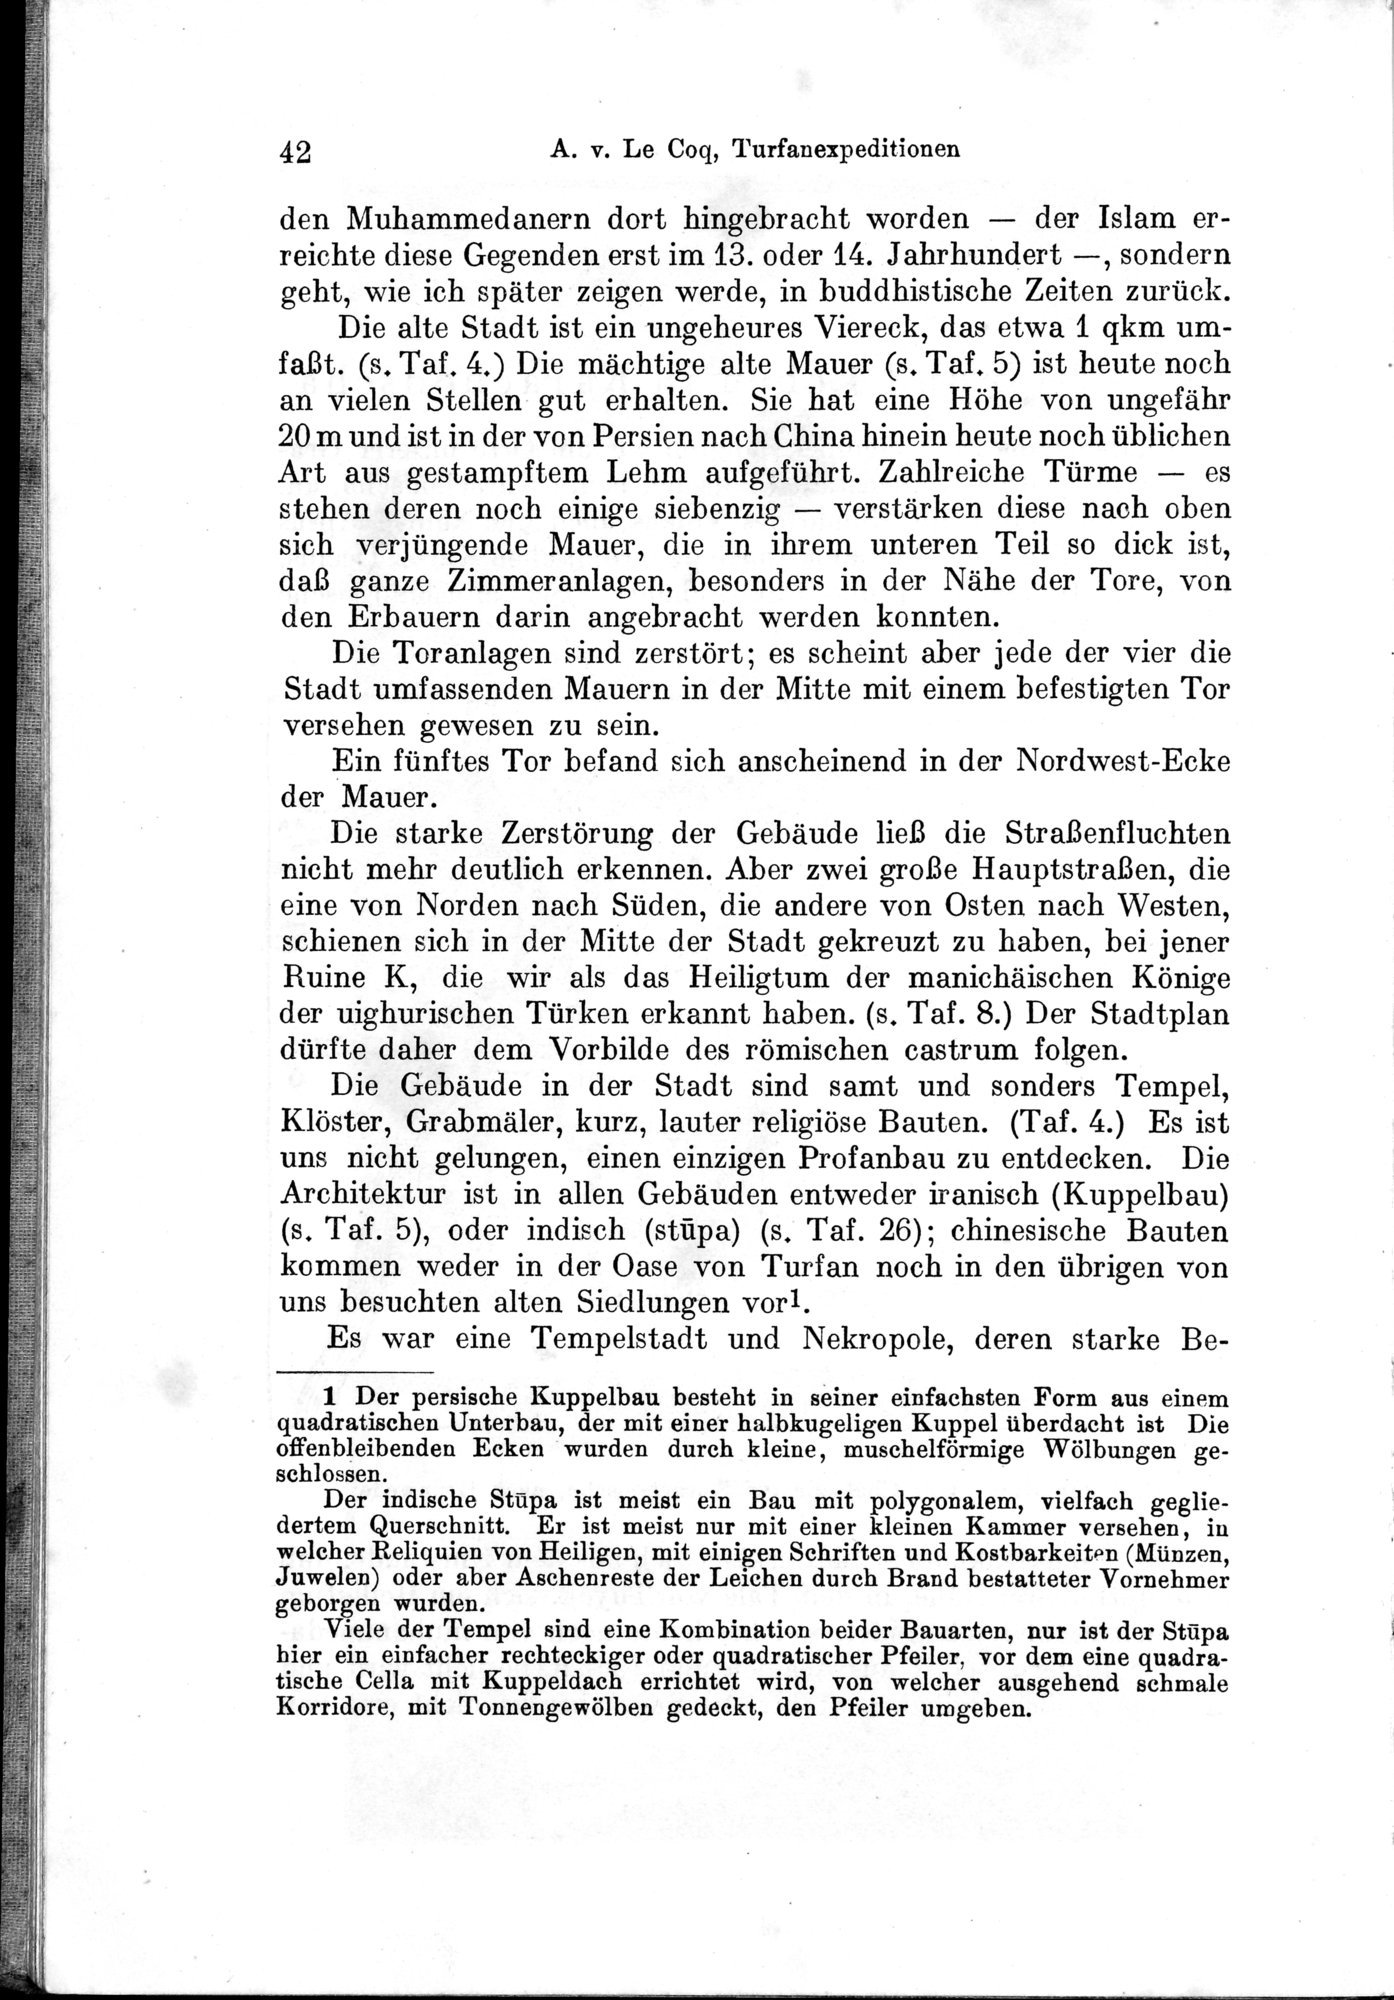 Auf Hellas Spuren in Ostturkistan : vol.1 / Page 68 (Grayscale High Resolution Image)